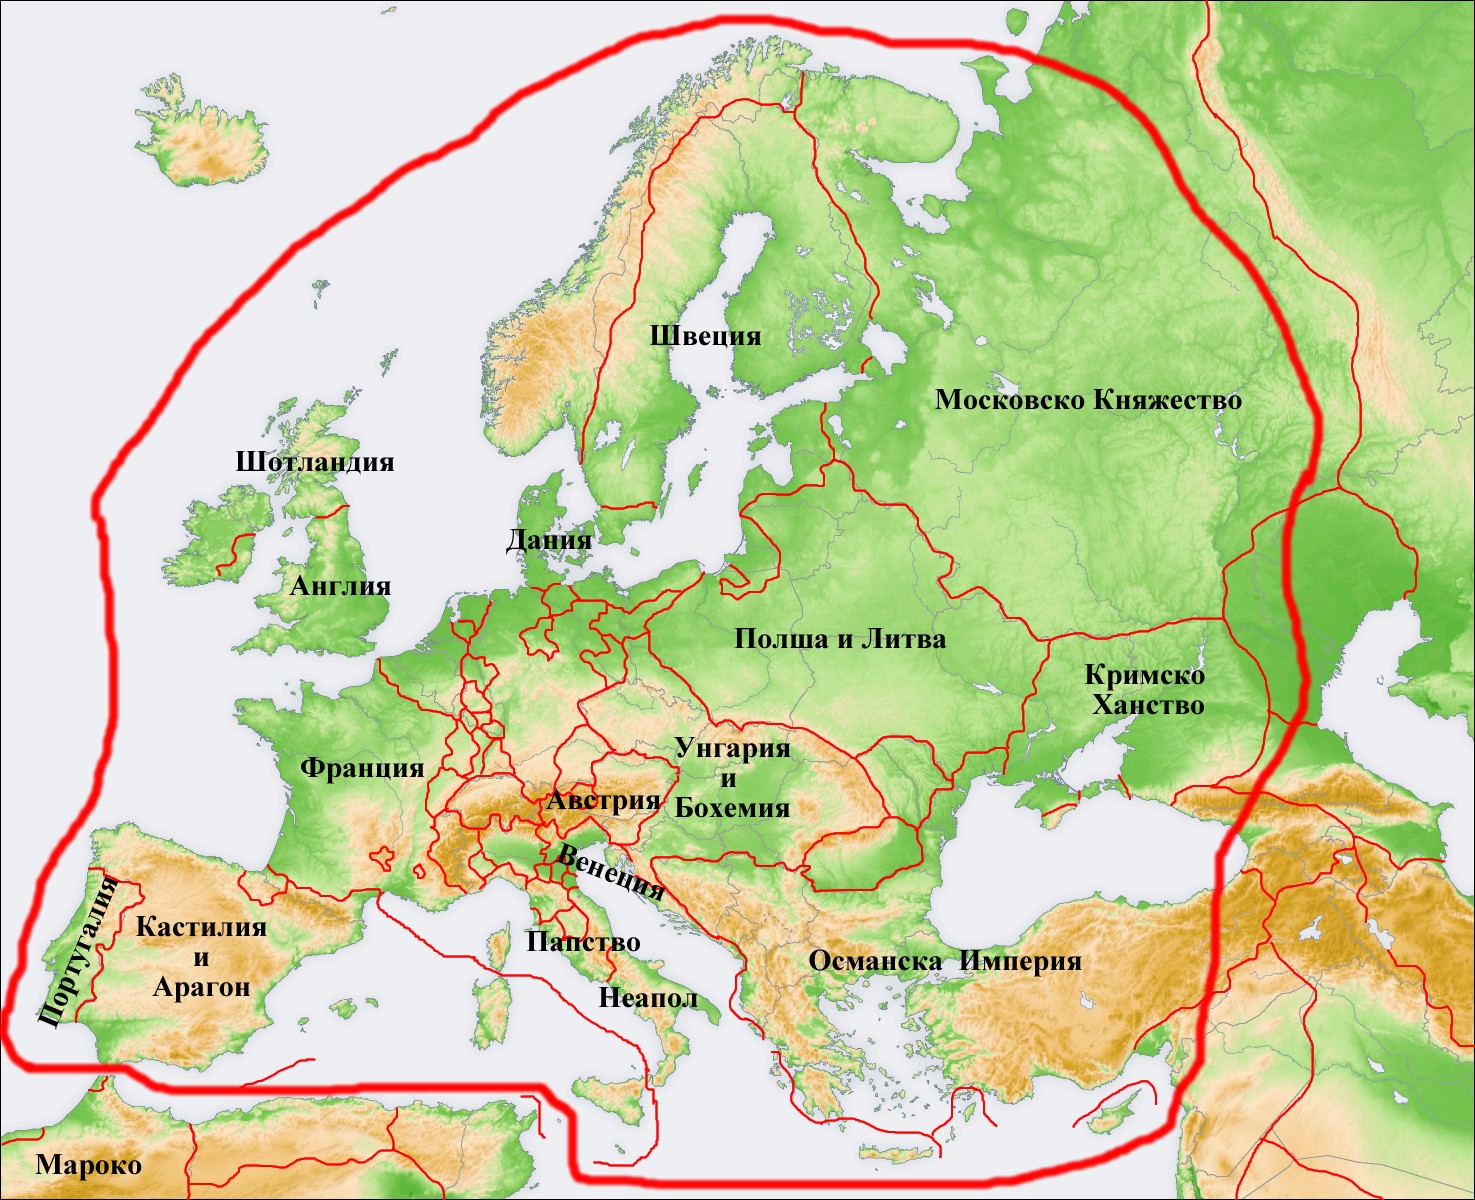 http://image.nauka.bg/history/world/Map1_Europe.jpg